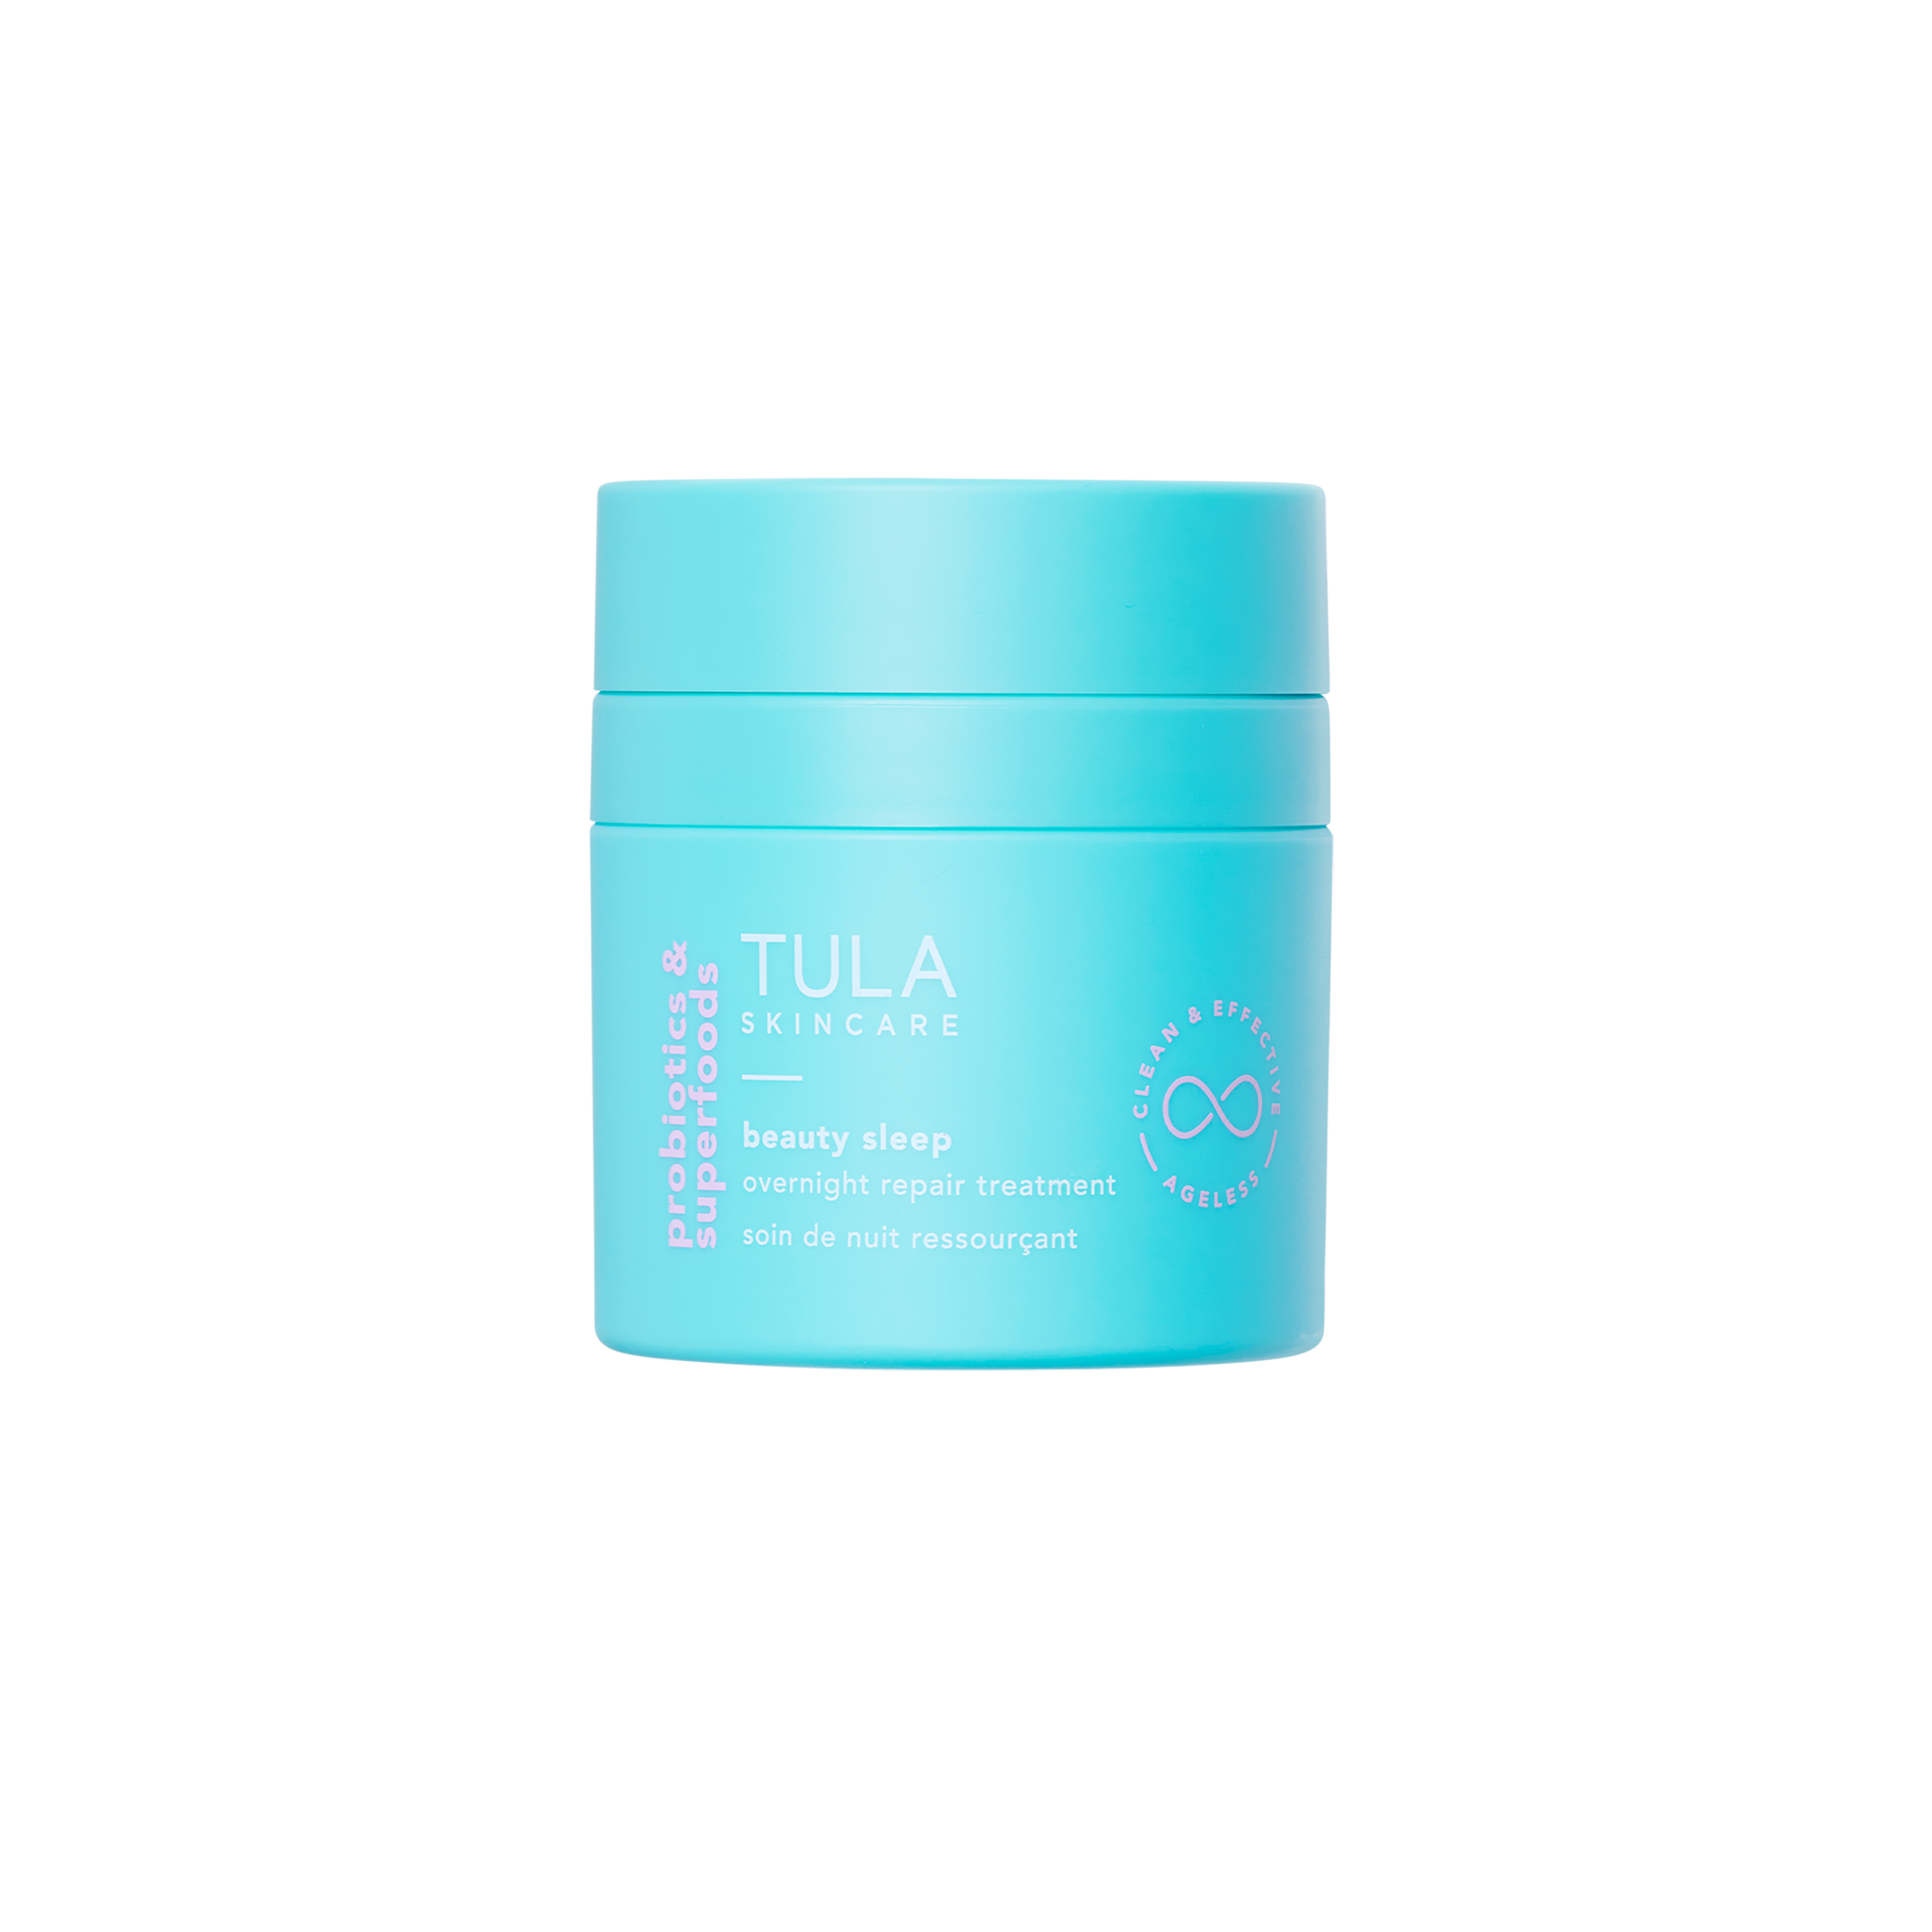 Maskerade: Das Sleep Overnight Repair Treatment von Tula spendet Feuchtigkeit und unterstützt die Regenerationsprozesse in der Haut, ca. 68 Euro